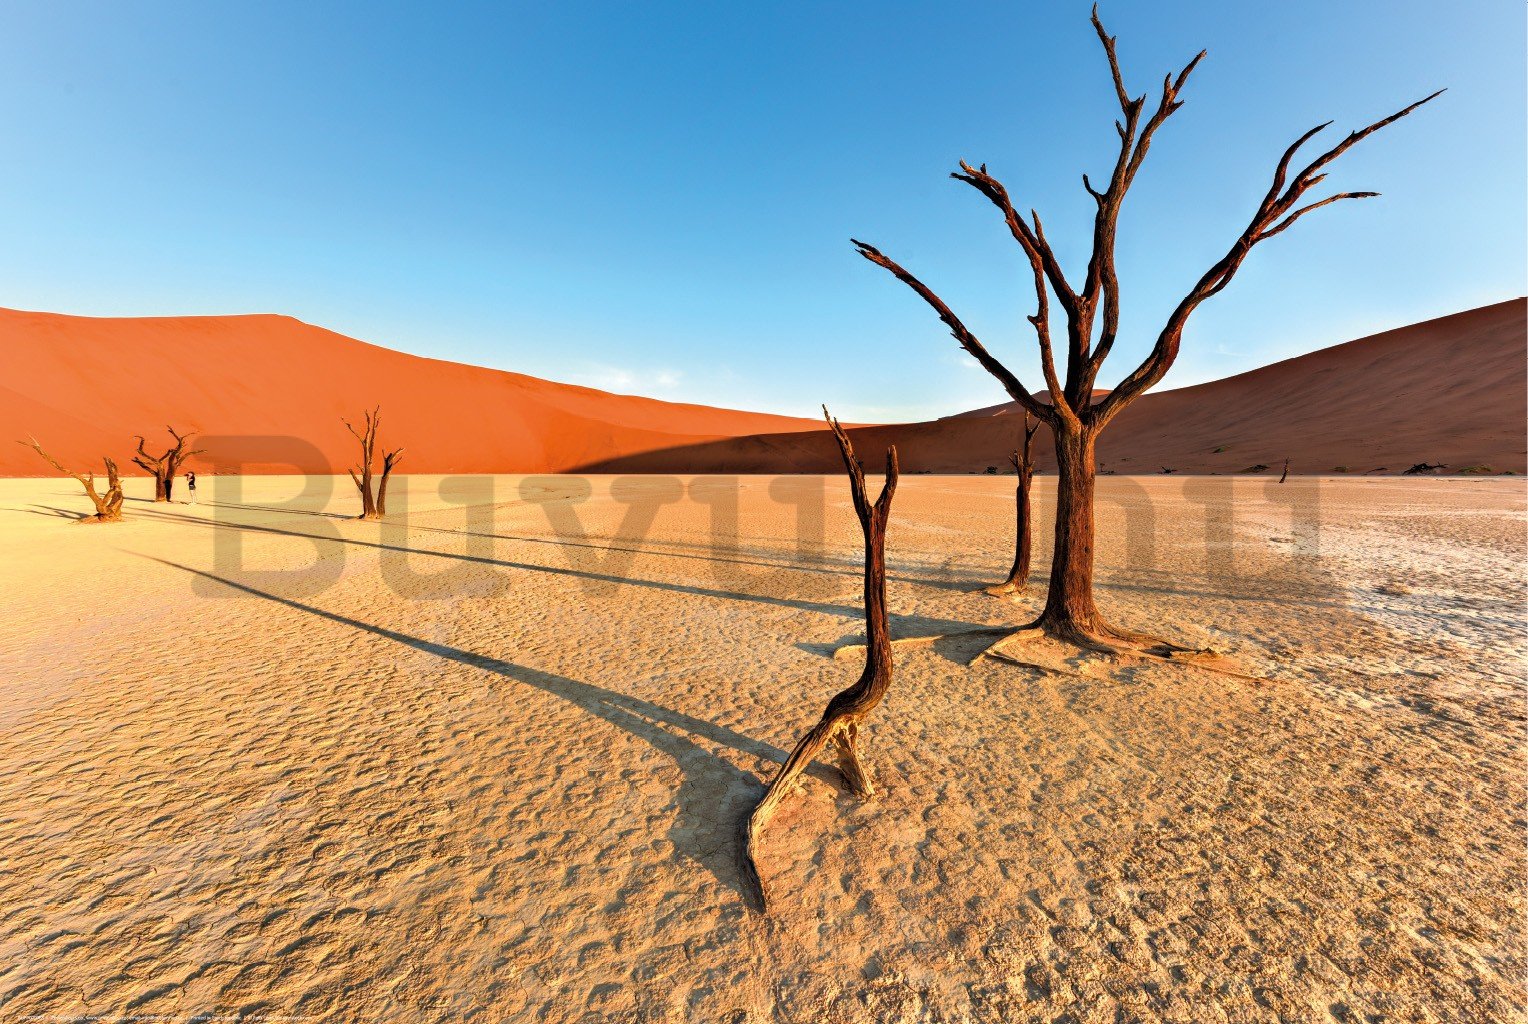 Poster: Száraz Namíb-sivatag